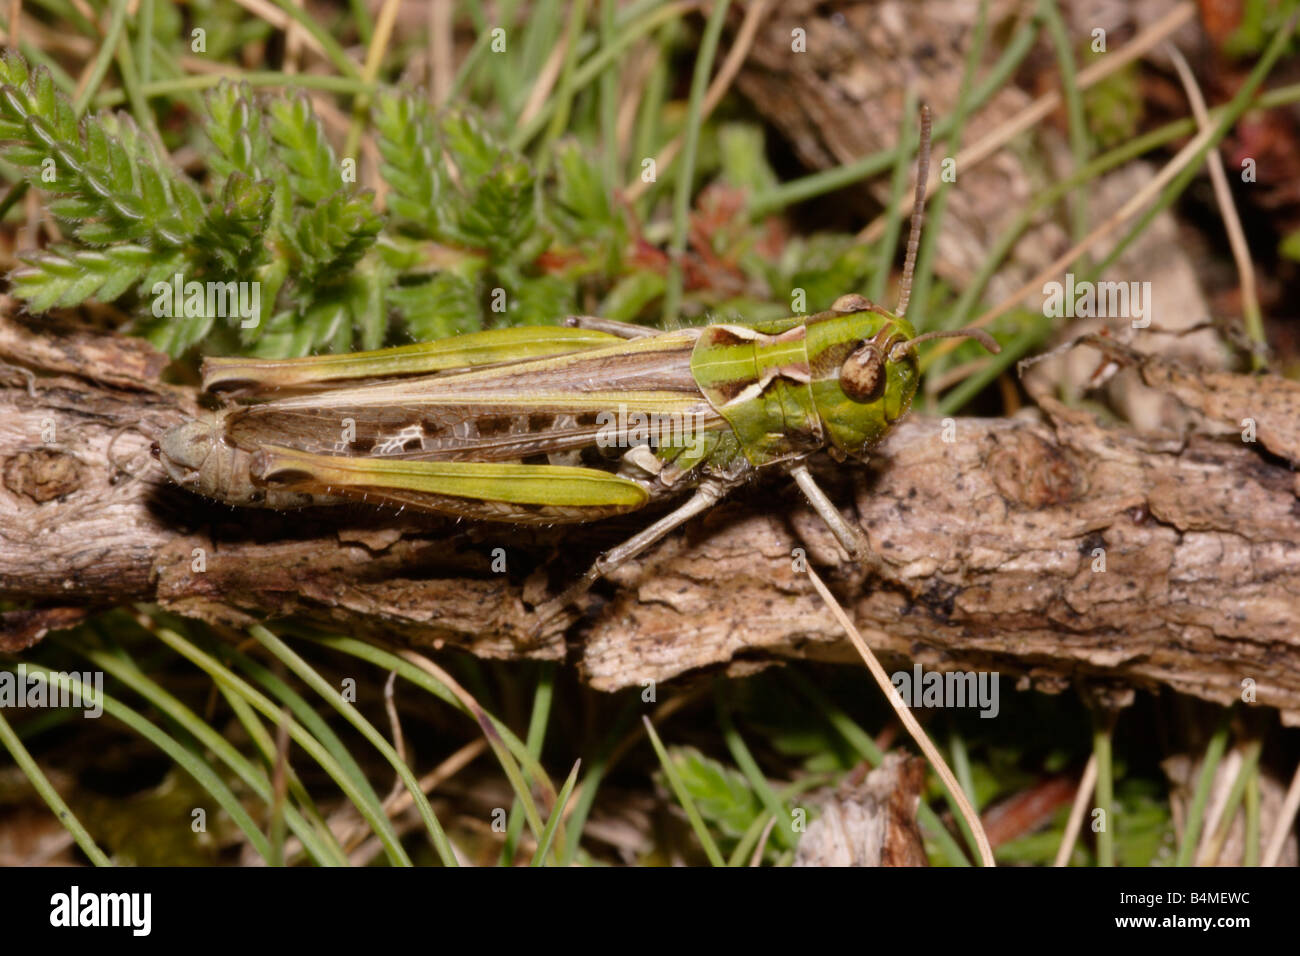 Mottled grasshopper Myrmeleotettix maculatus Acrididae UK Stock Photo